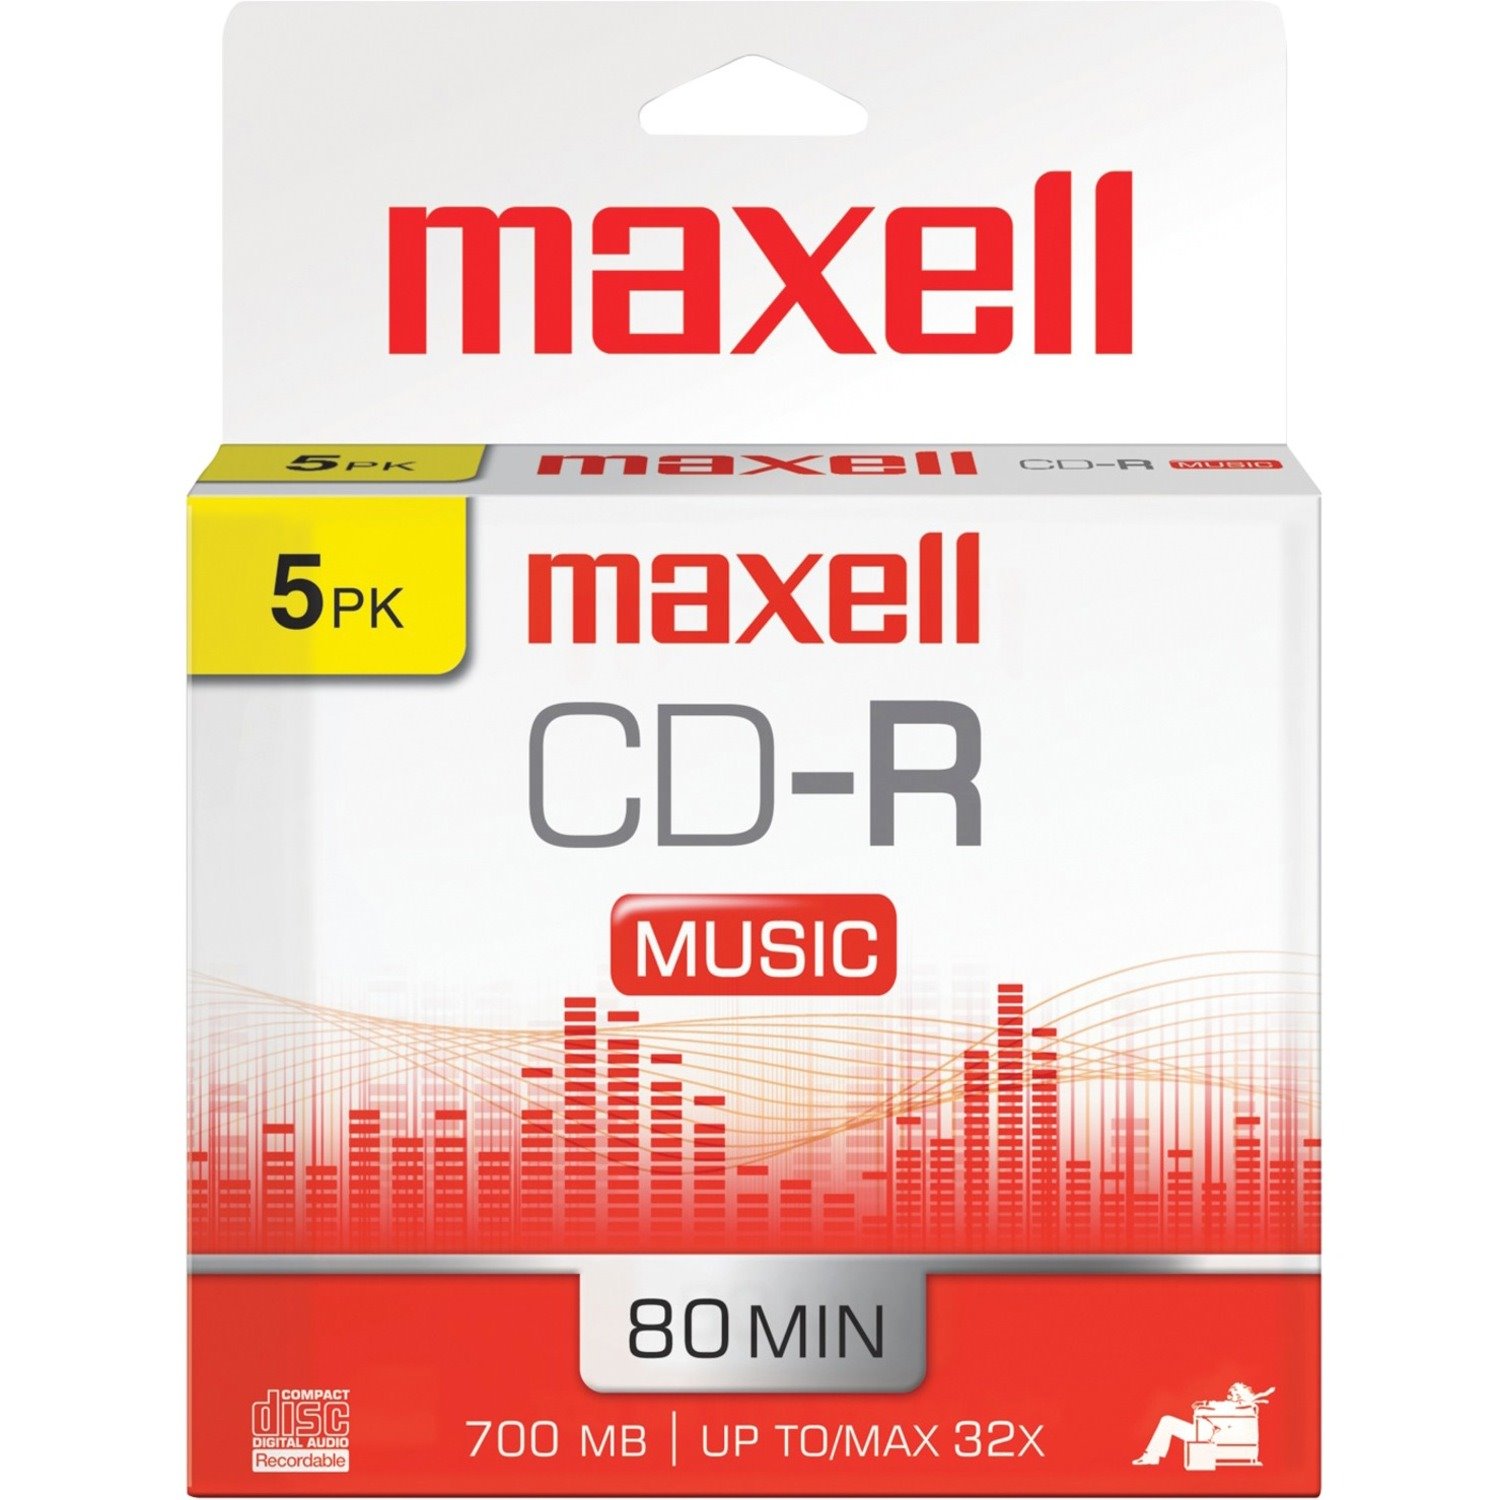 Maxell Music CD-R Media